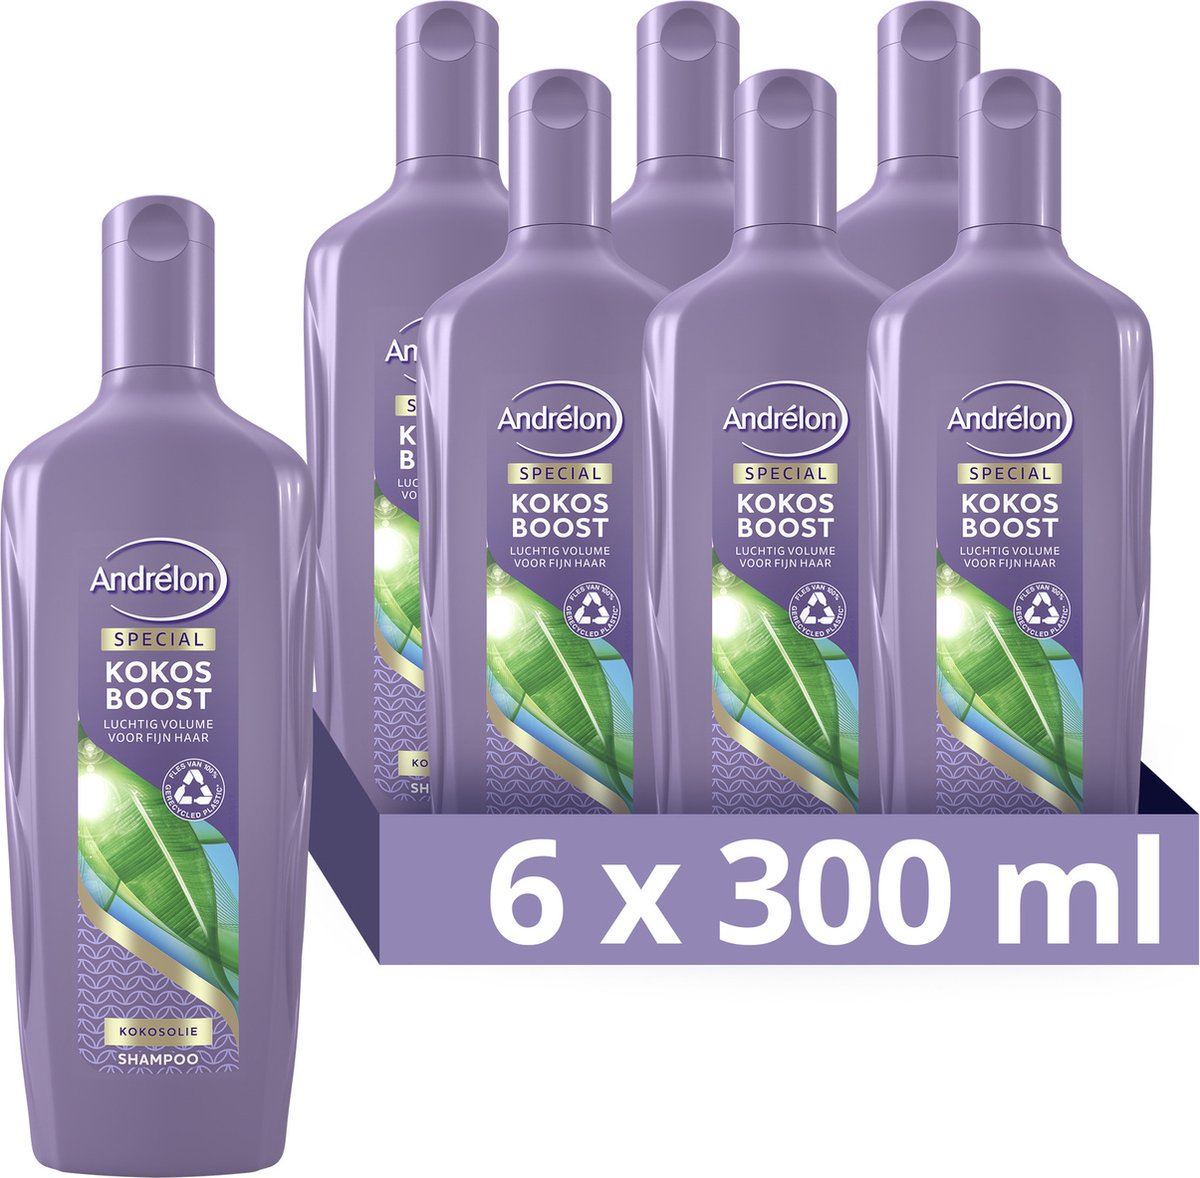 Andrélon Special Kokos Boost Shampoo - 6 x 300 ml - Voordeelverpakking